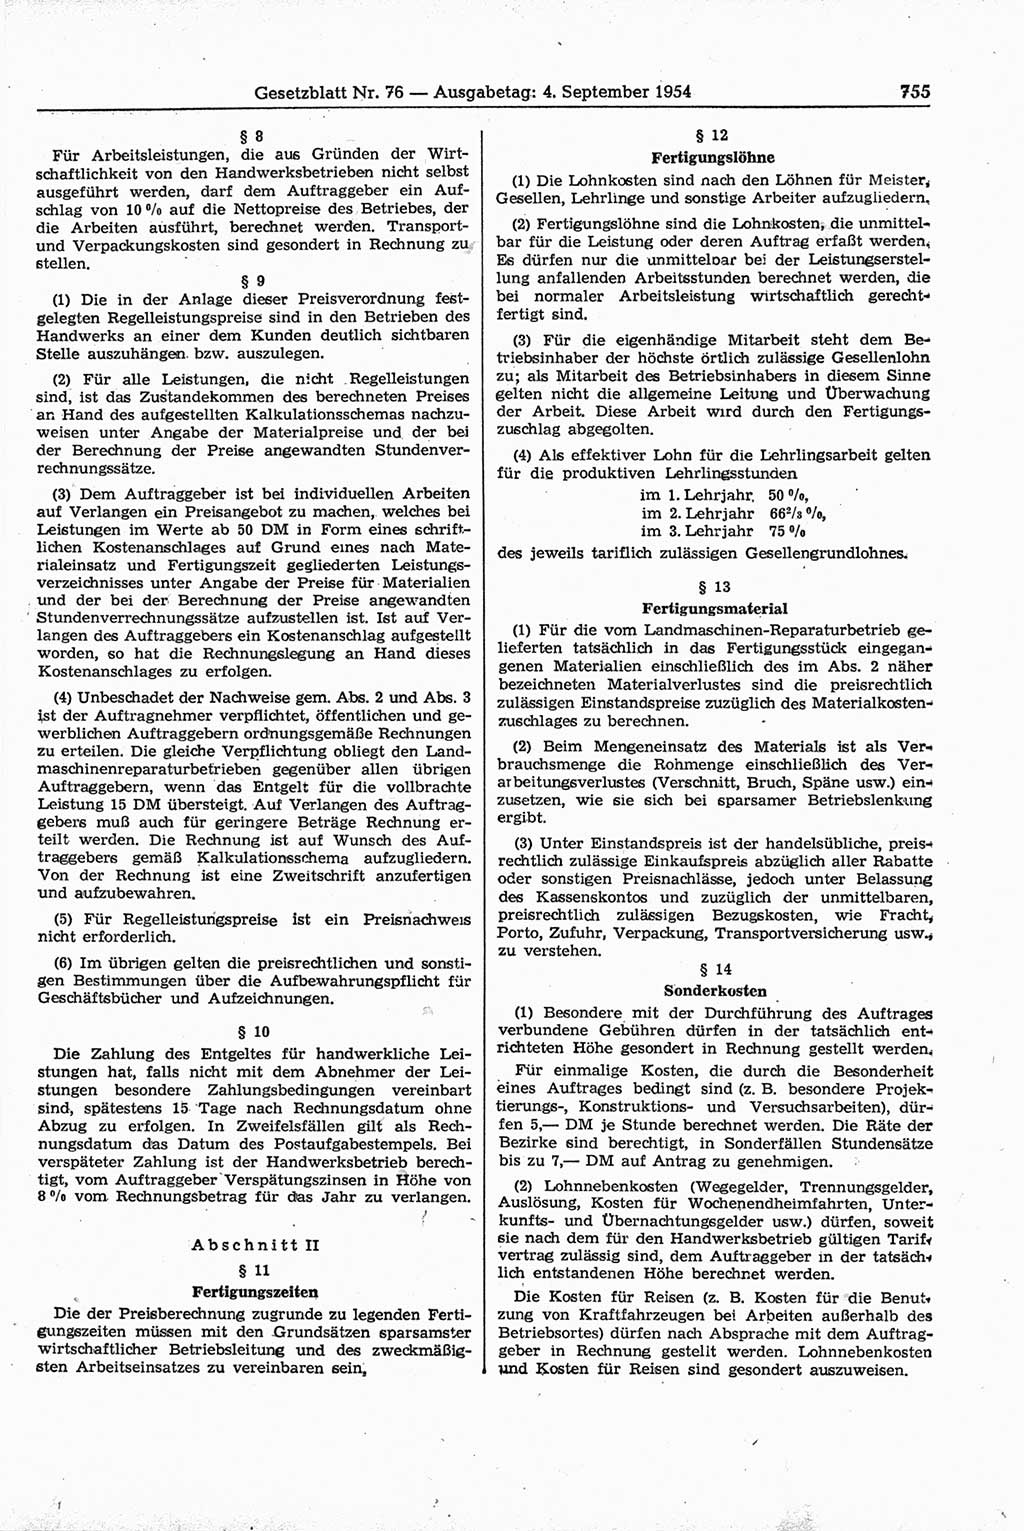 Gesetzblatt (GBl.) der Deutschen Demokratischen Republik (DDR) 1954, Seite 755 (GBl. DDR 1954, S. 755)